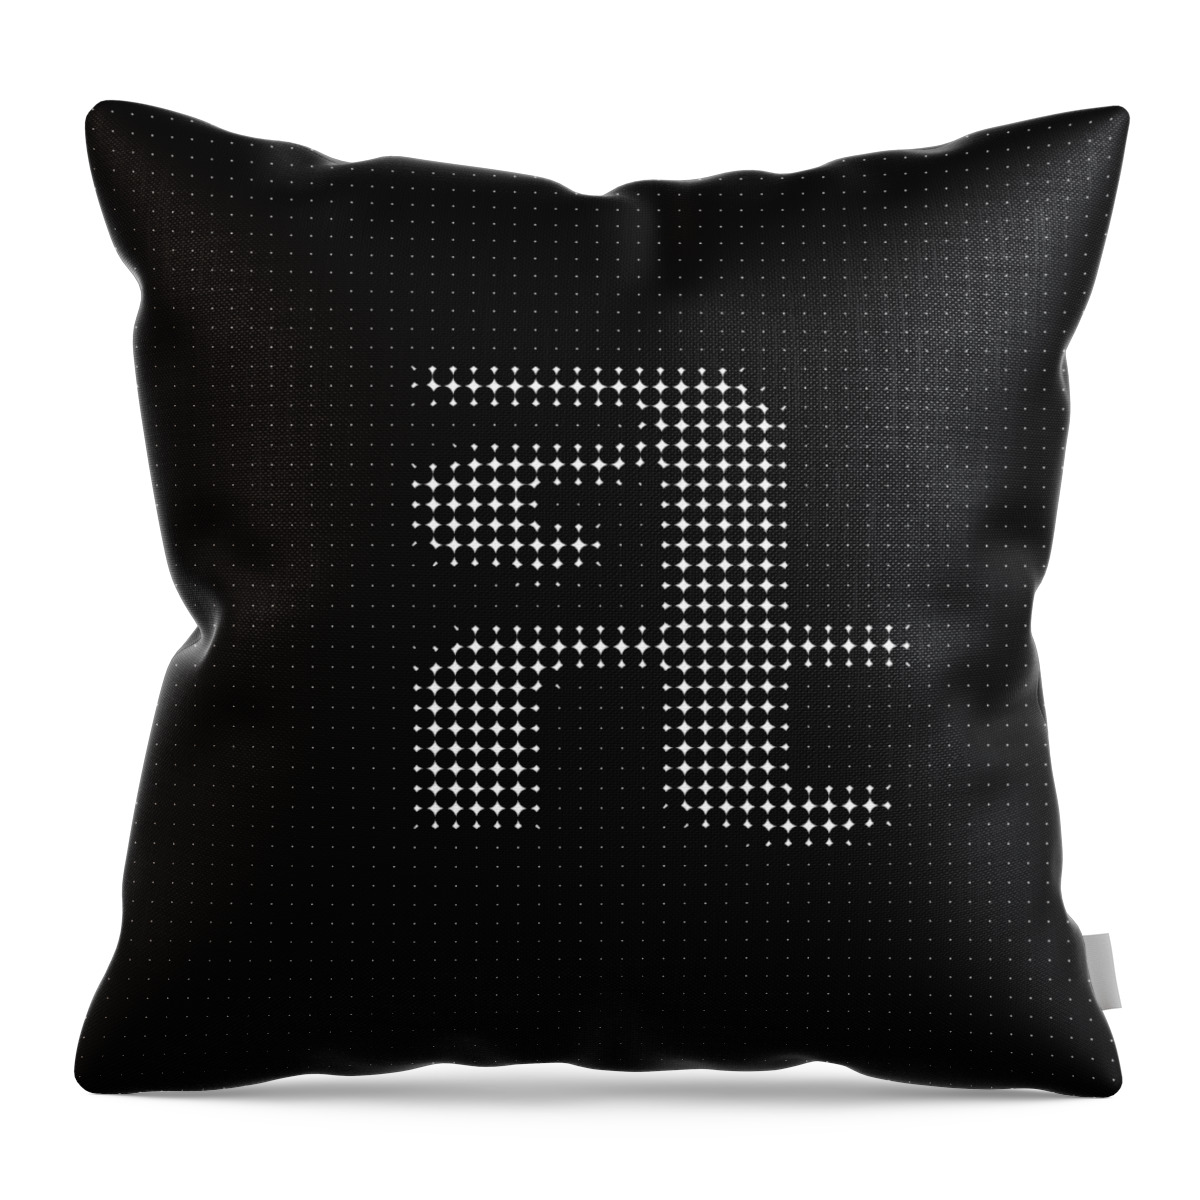 Art Throw Pillow featuring the digital art Art Art 2 by Robert Thalmeier